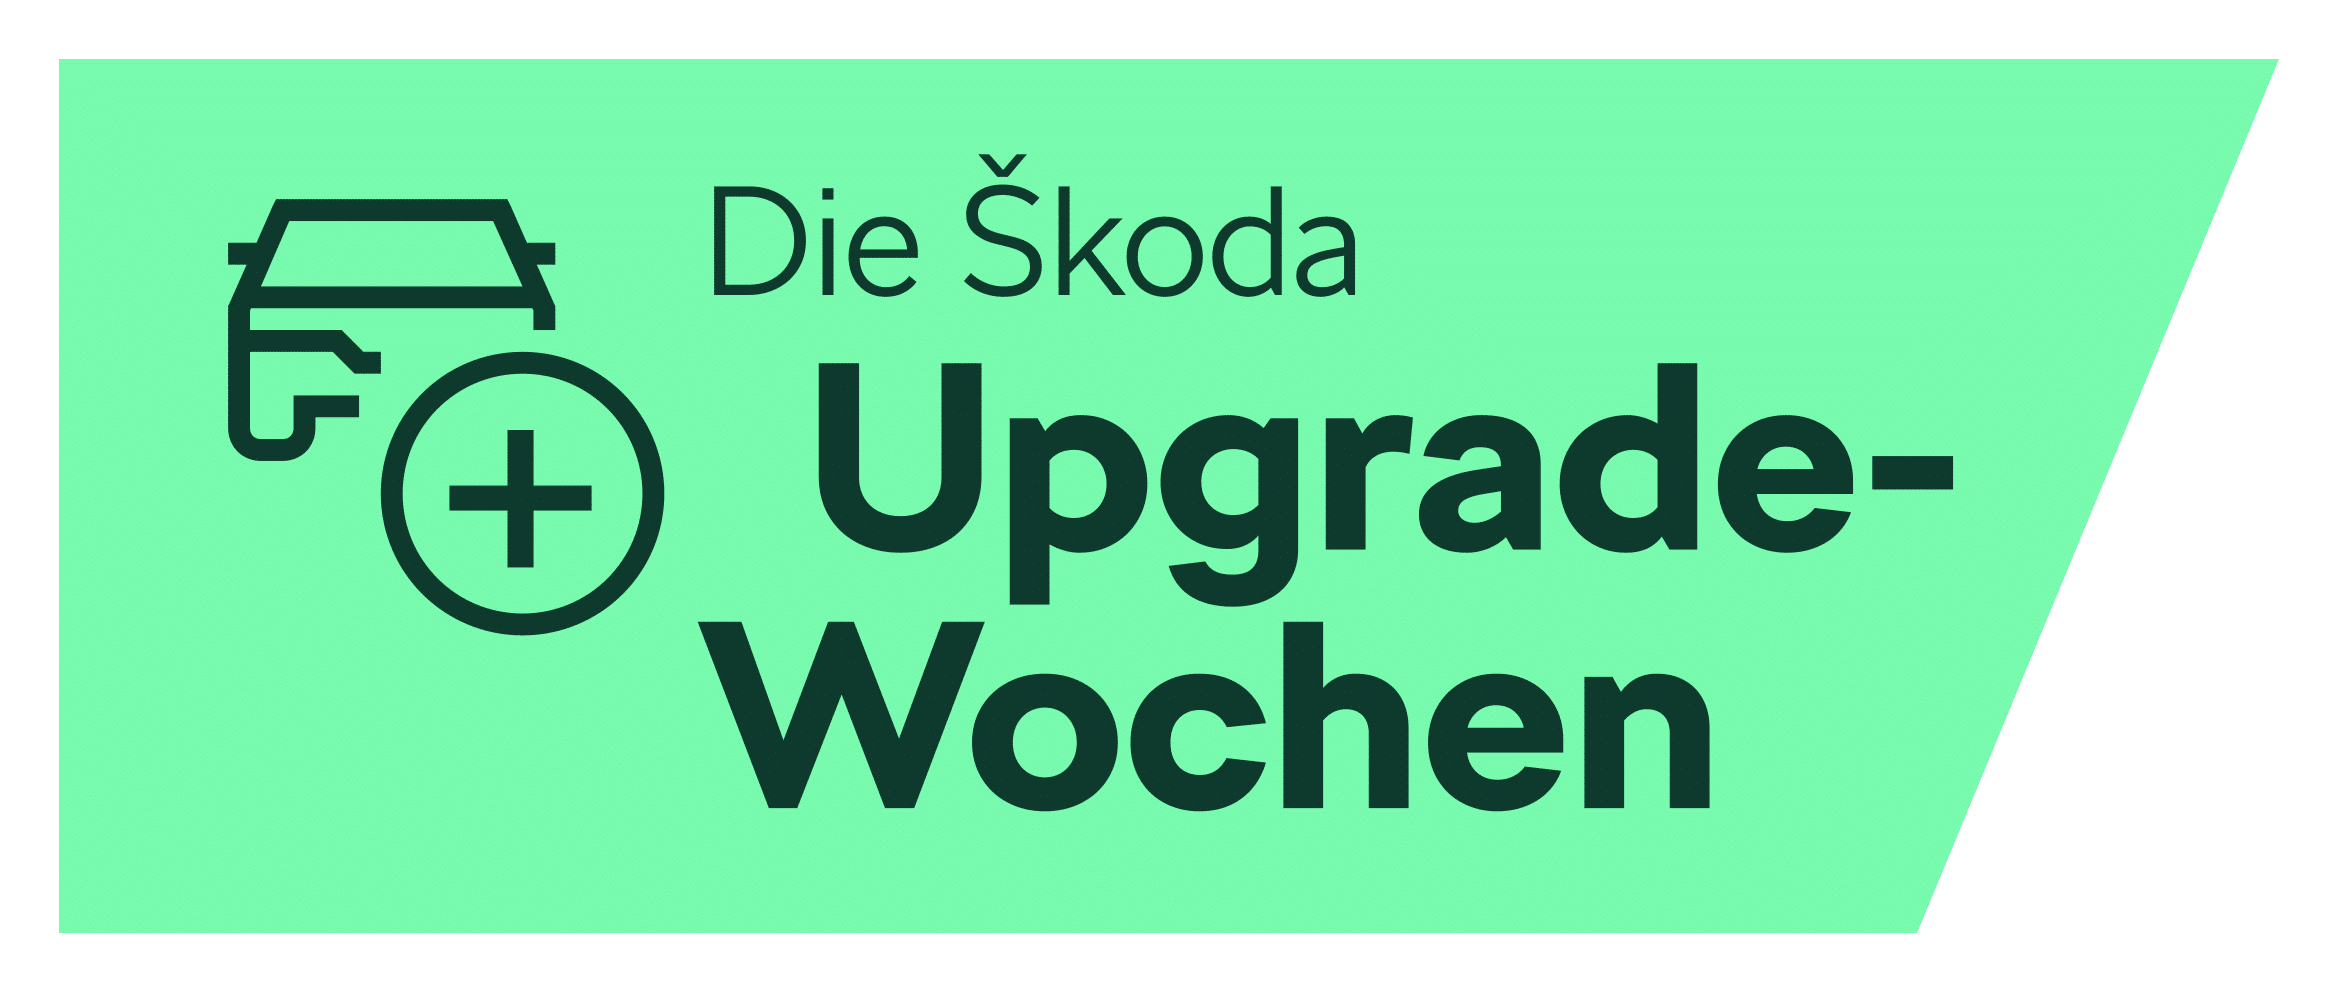 Skoda Upgrade Wochen